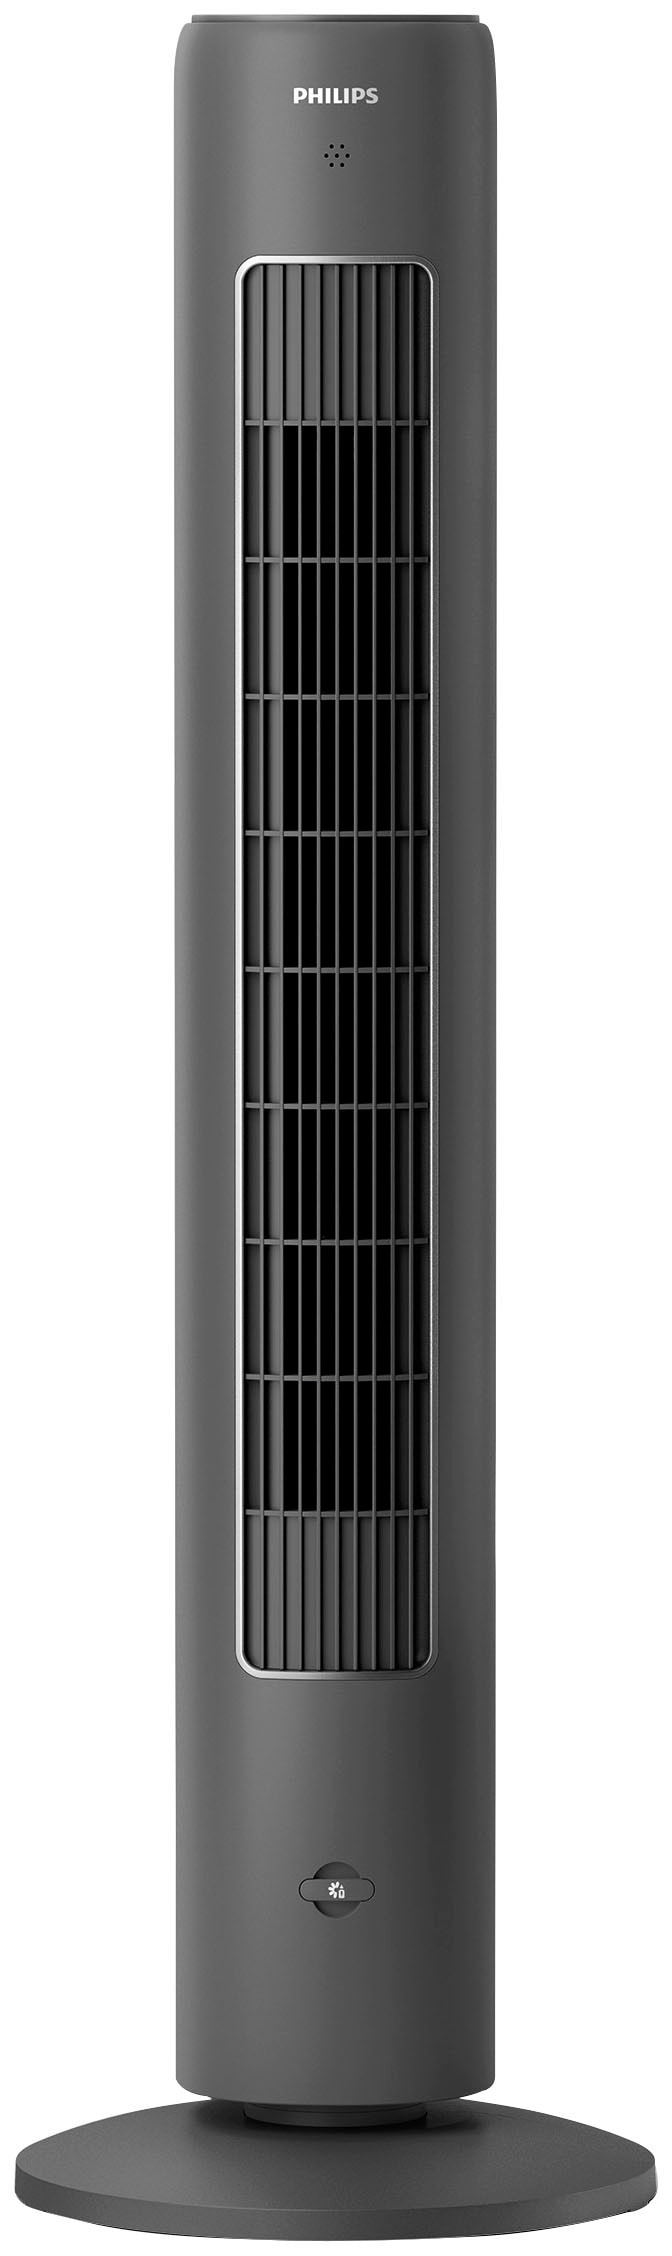 Philips Turmventilator »CX5535/11«, 3 Stufen, Höhe 105cm, inkl. Fernbedienung, geeignet als Aroma-Diffuser